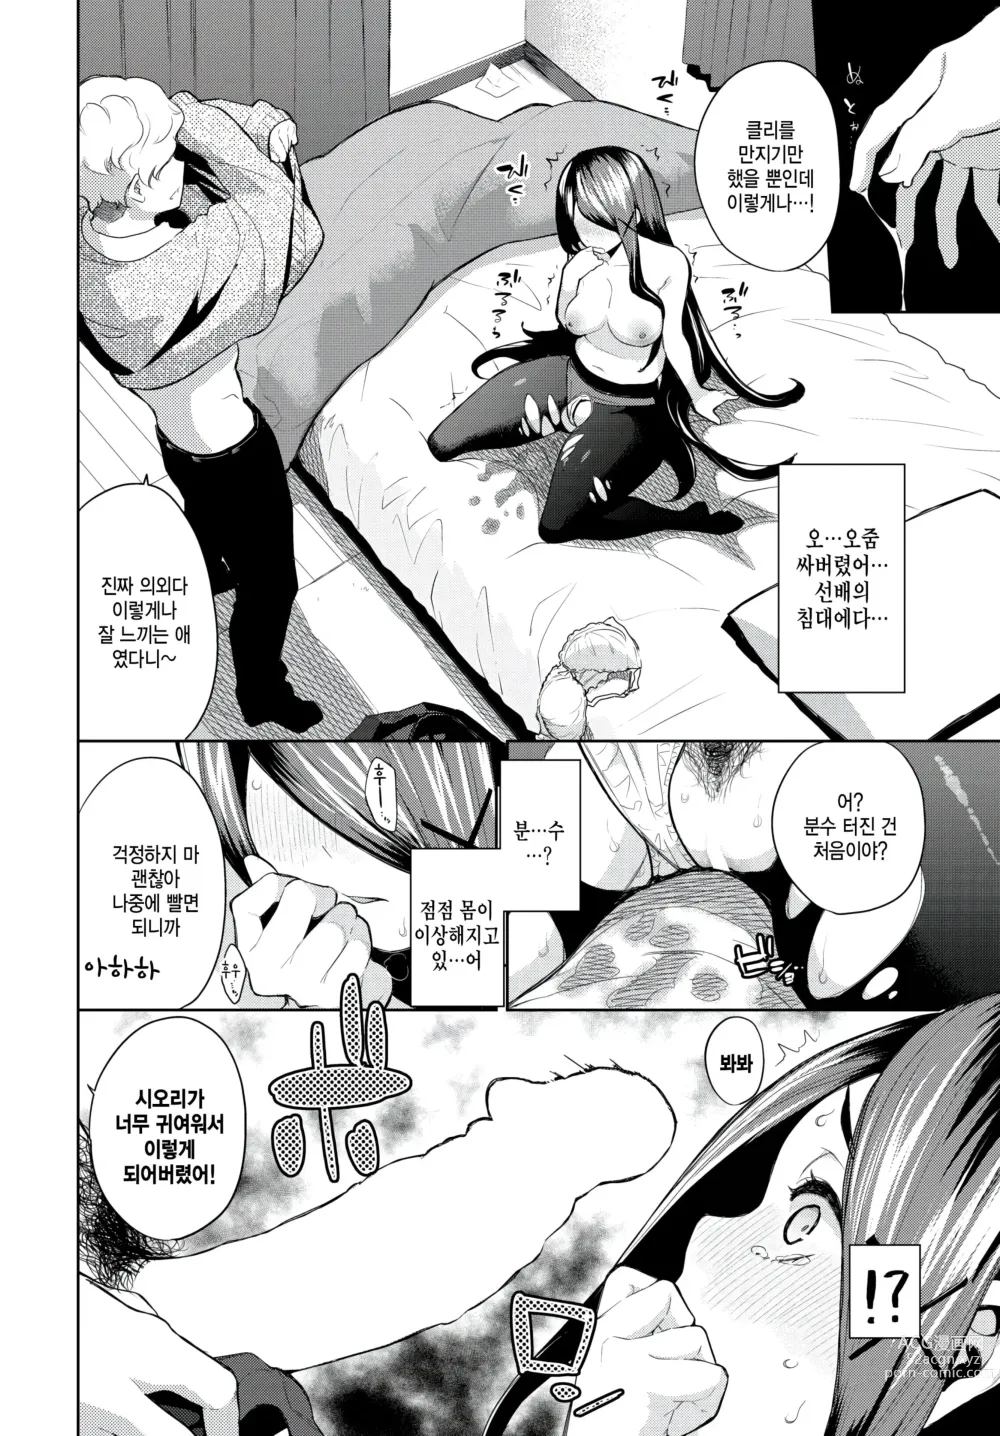 Page 10 of manga Jimikano Glow up!